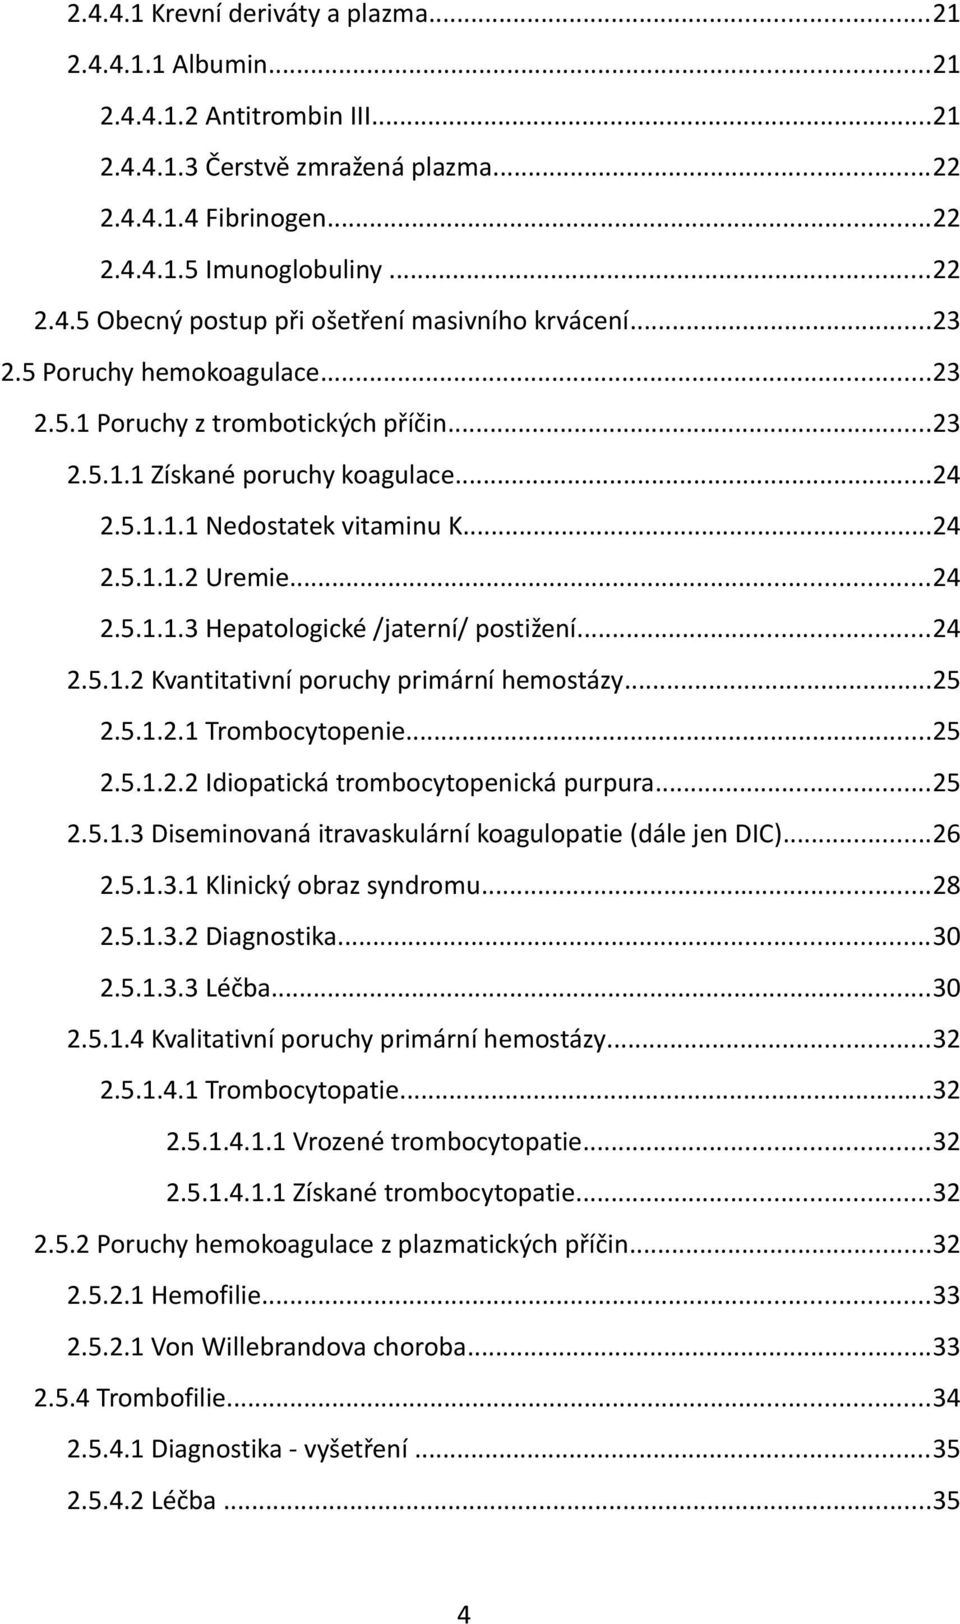 ..24 2.5.1.2 Kvantitativní poruchy primární hemostázy...25 2.5.1.2.1 Trombocytopenie...25 2.5.1.2.2 Idiopatická trombocytopenická purpura...25 2.5.1.3 Diseminovaná itravaskulární koagulopatie (dále jen DIC).